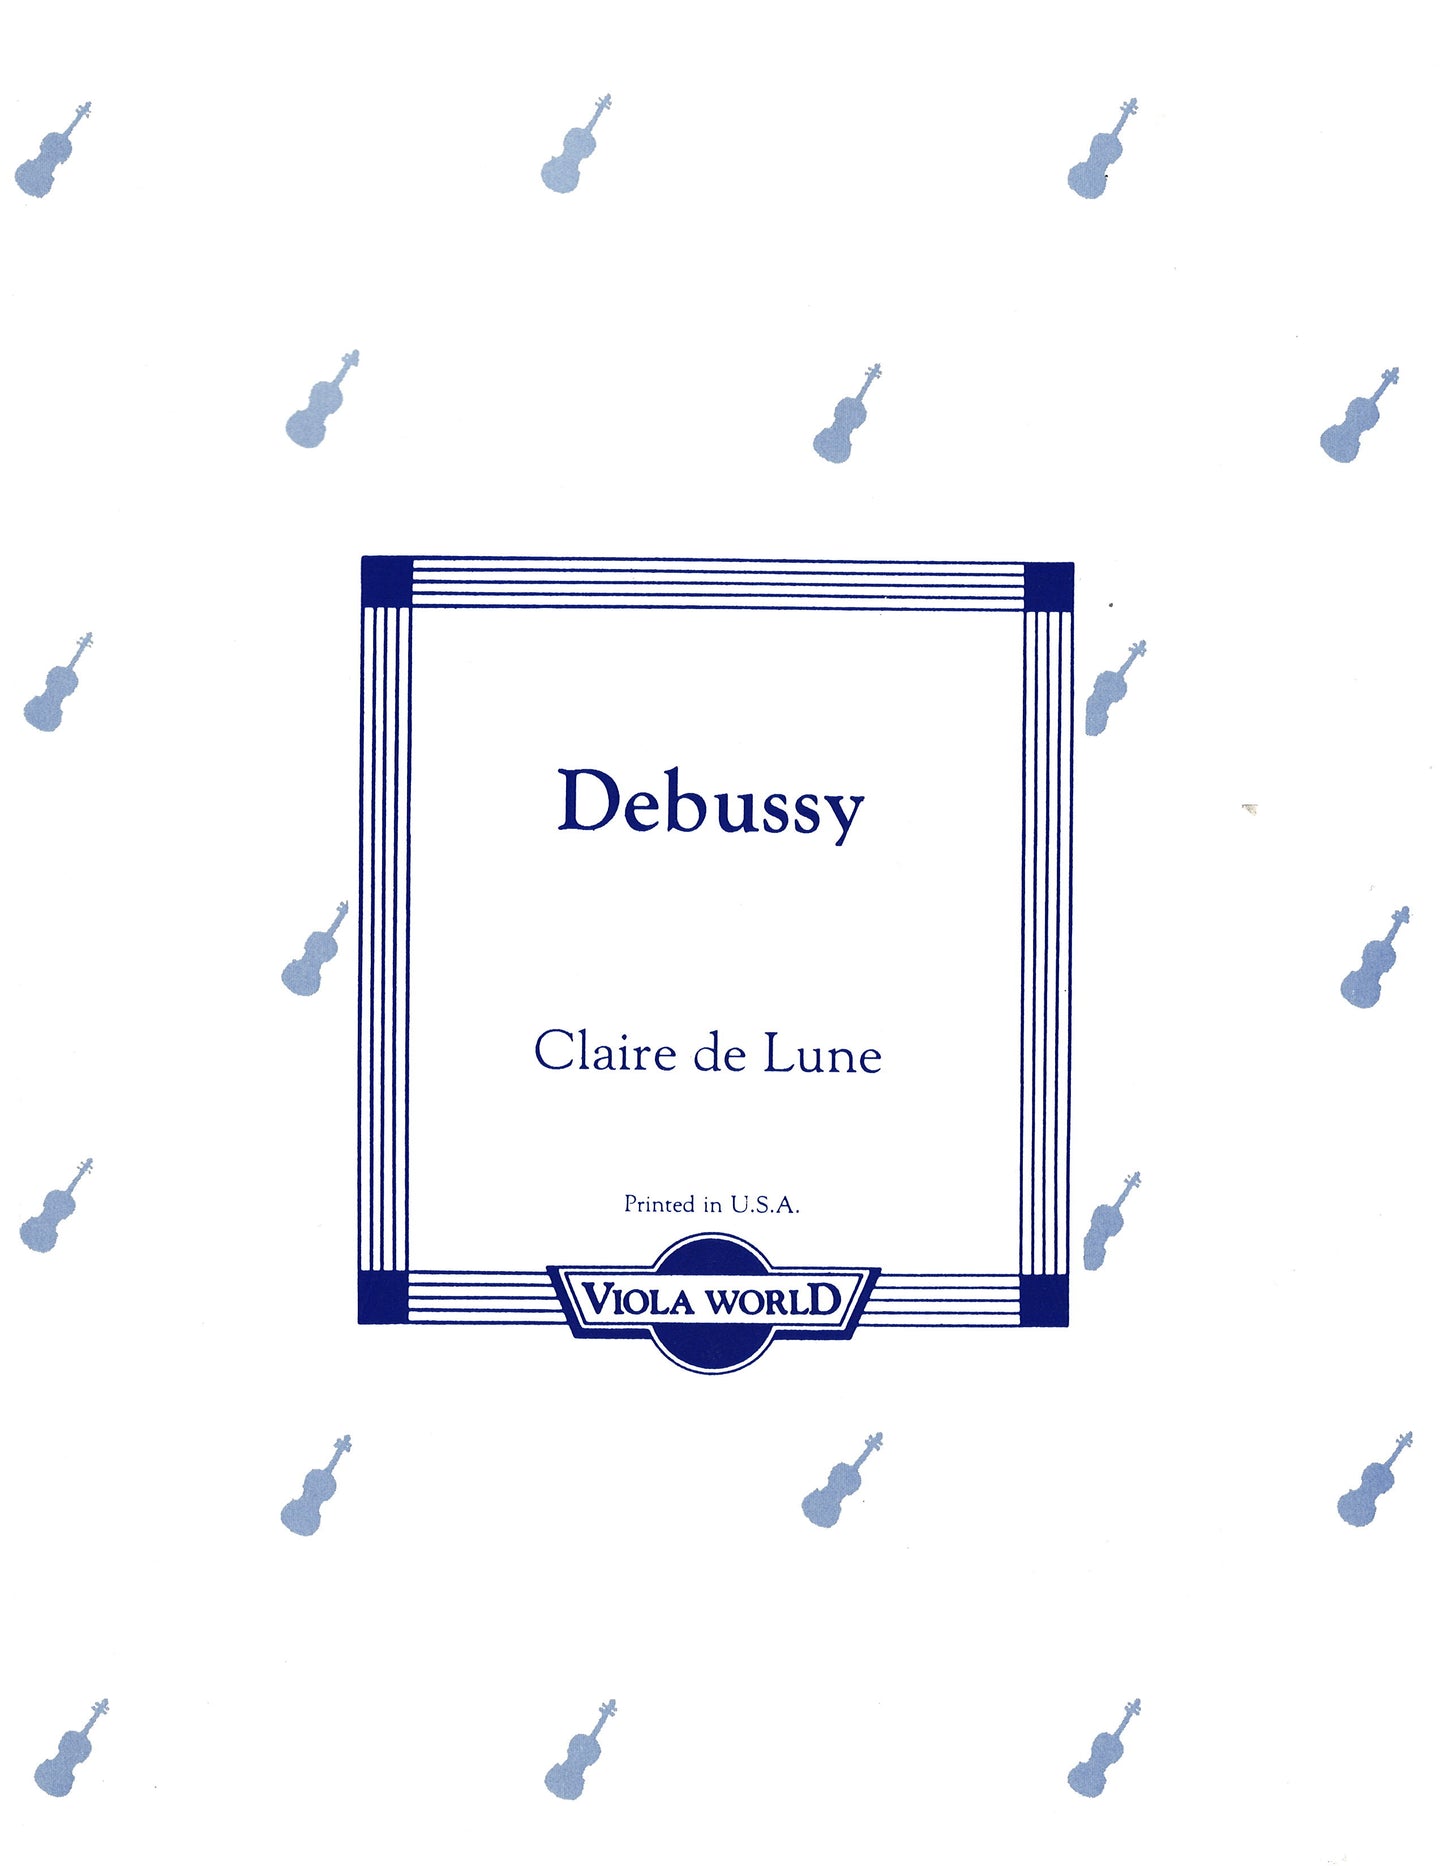 DeBussy - Claire de Lune